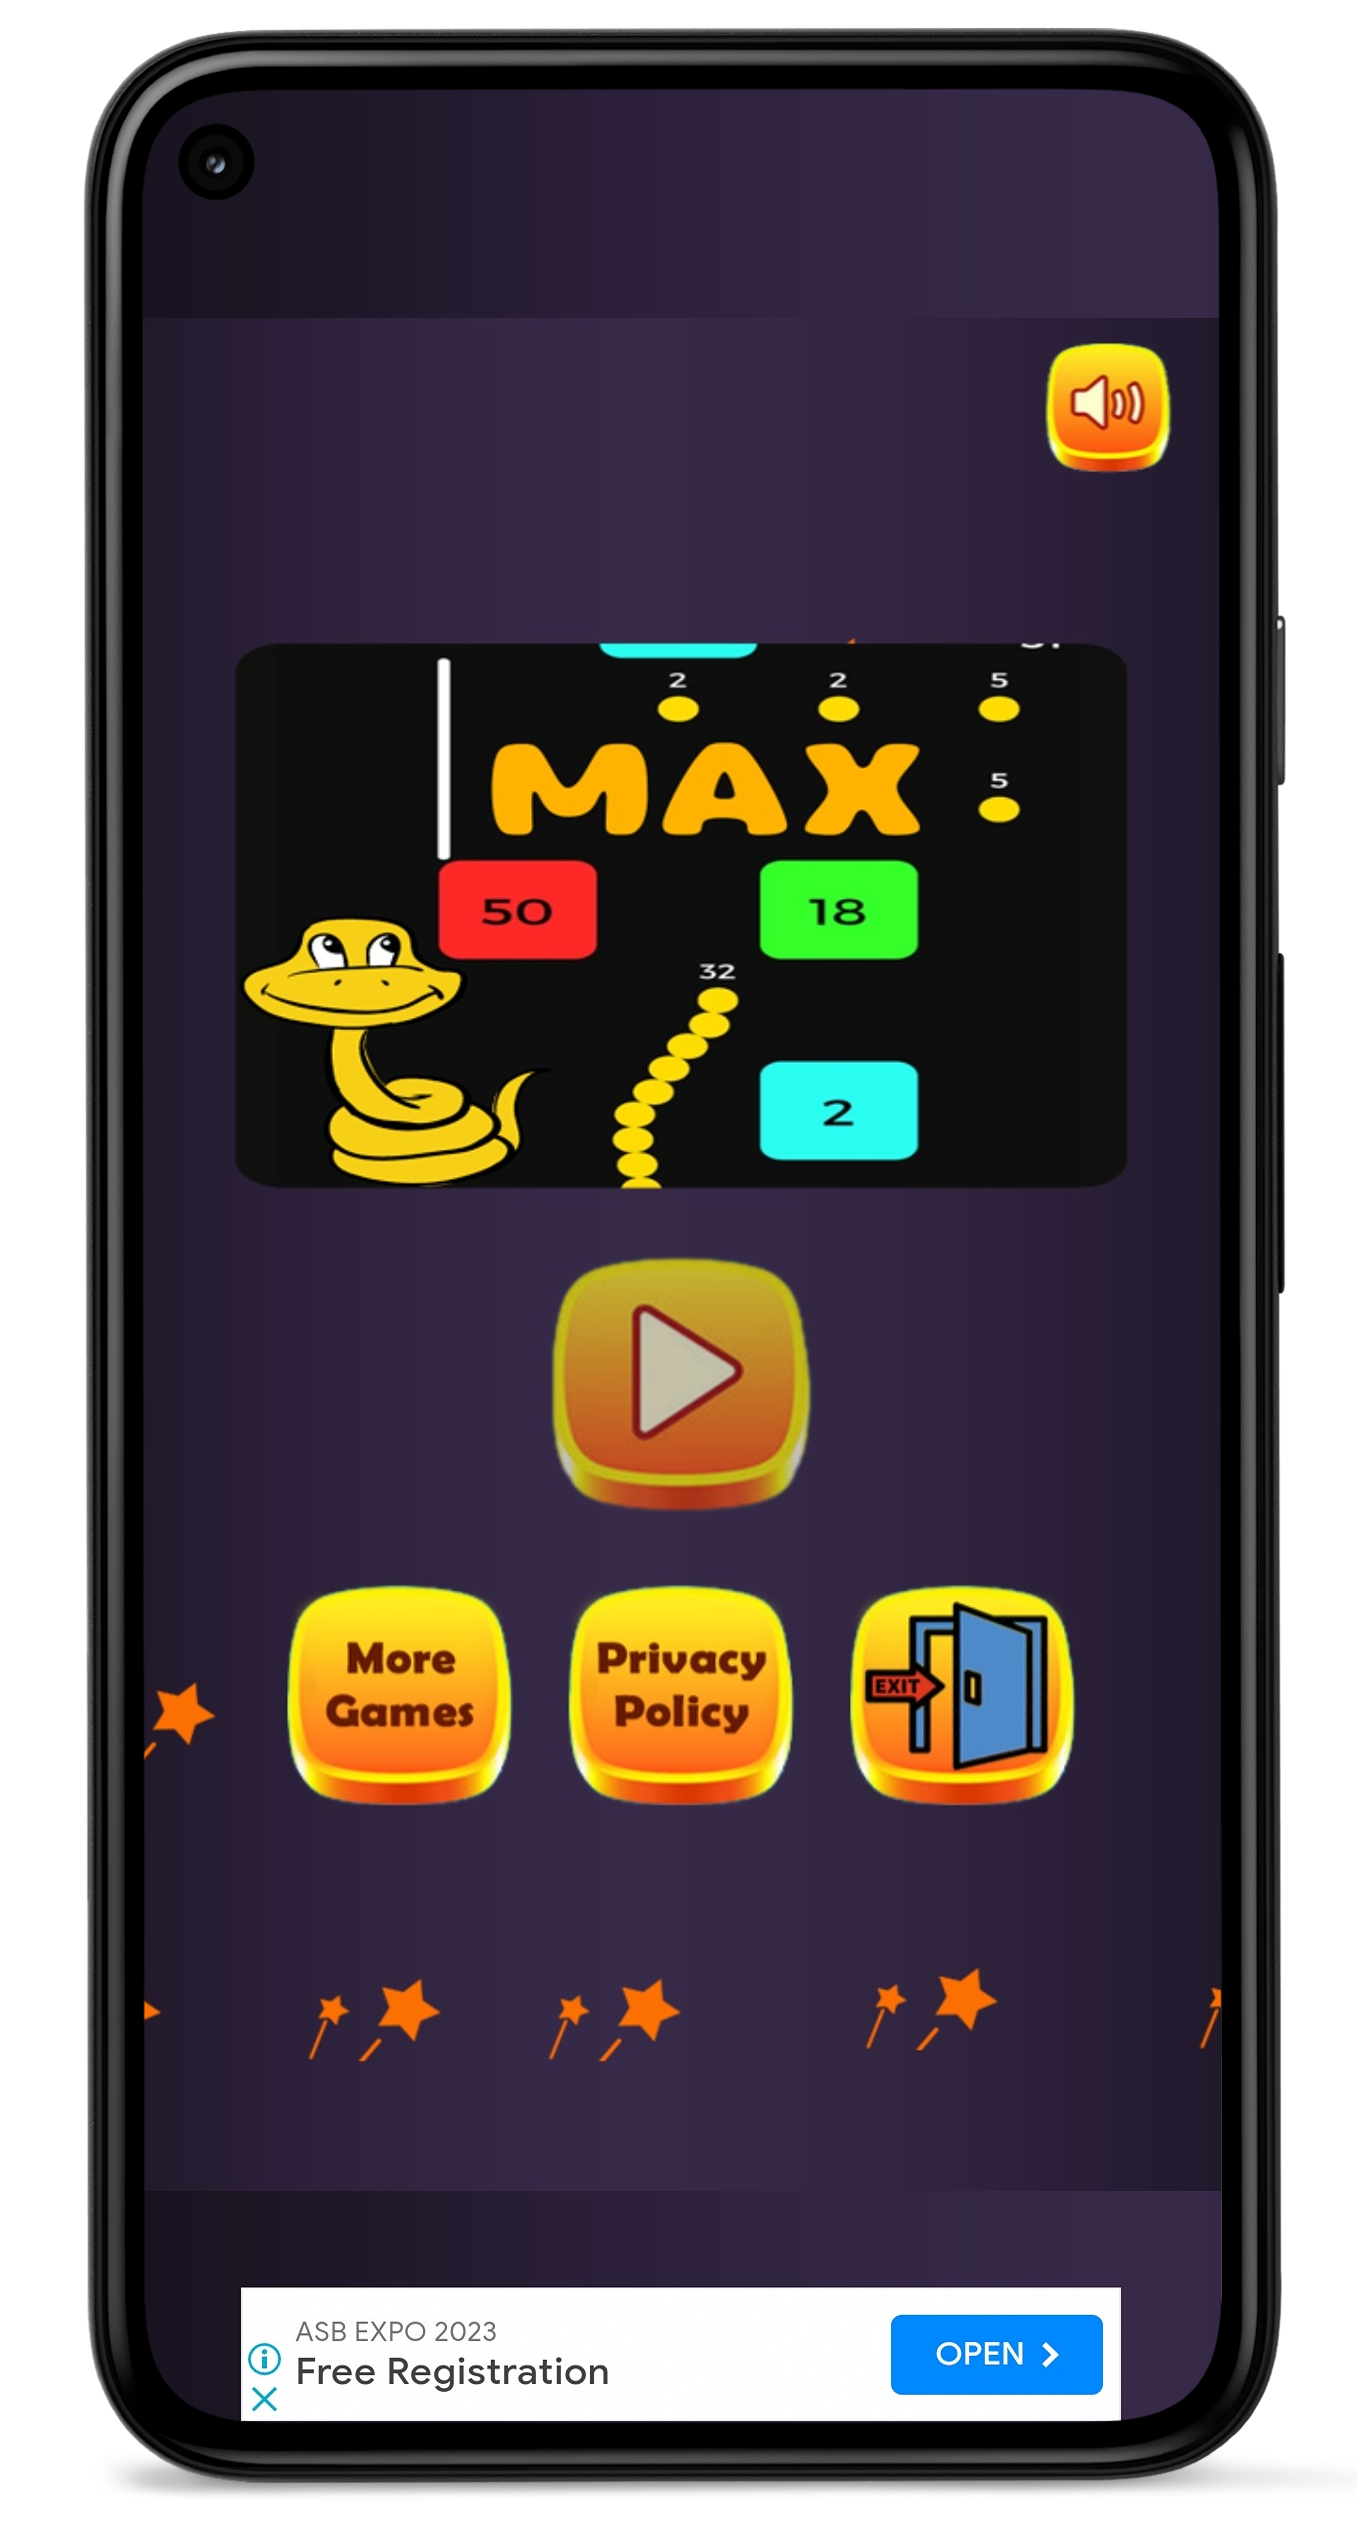 Download do APK de Snake Classic para Android